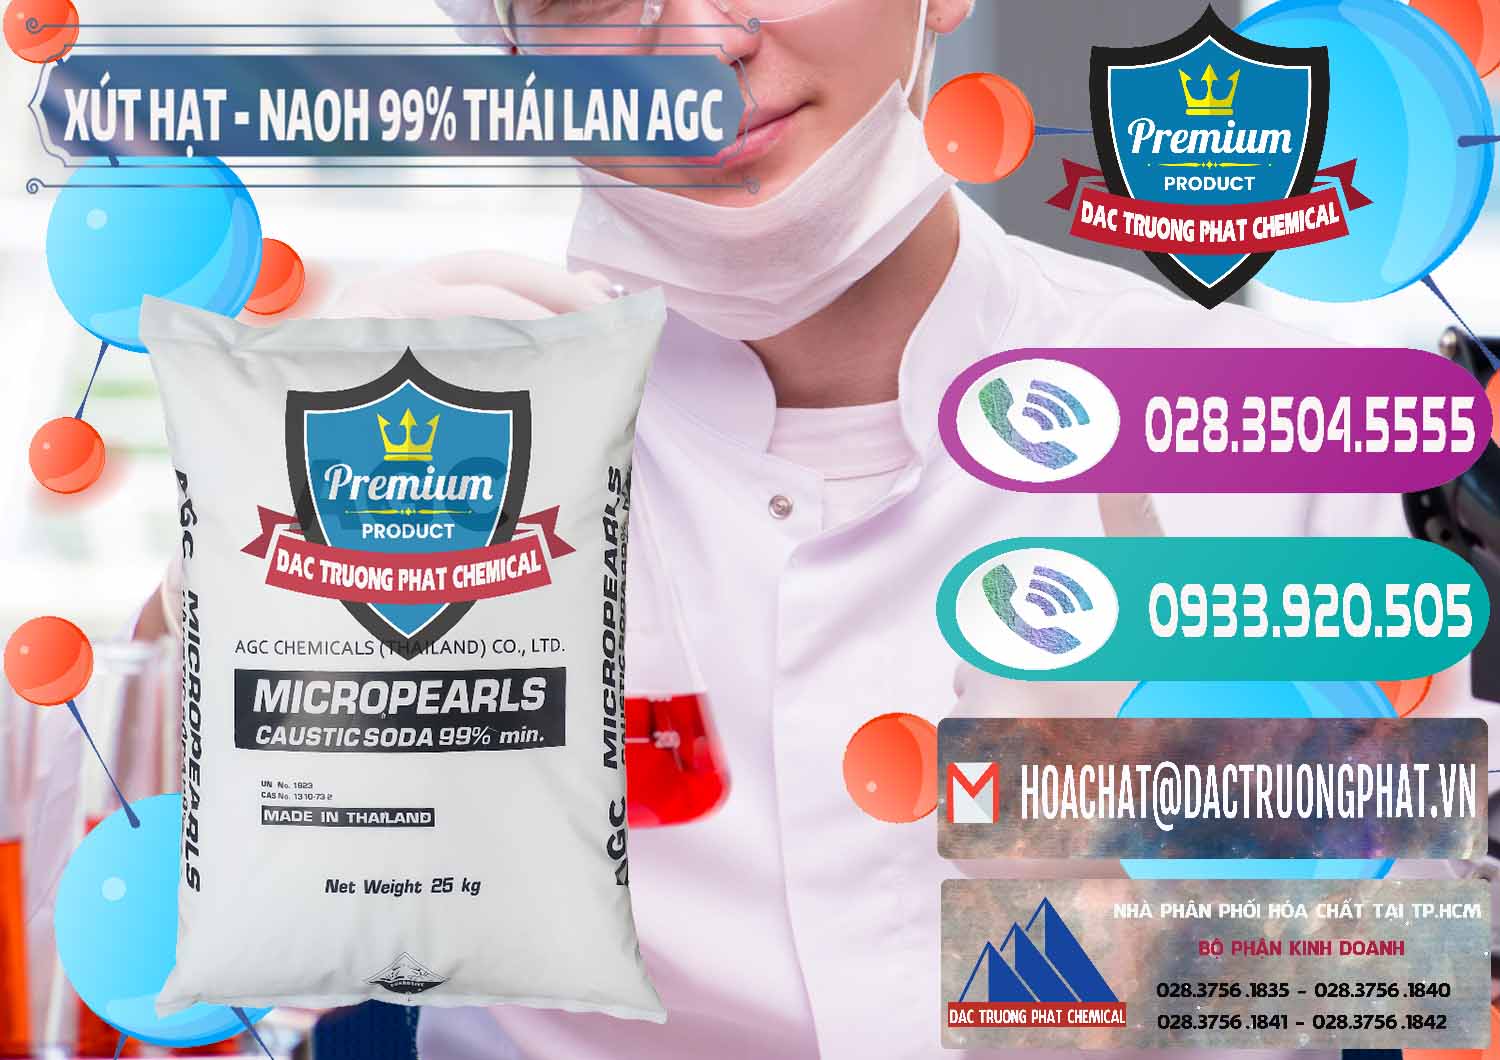 Nơi chuyên phân phối - bán Xút Hạt - NaOH Bột 99% AGC Thái Lan - 0168 - Công ty cung cấp và bán hóa chất tại TP.HCM - hoachatxulynuoc.com